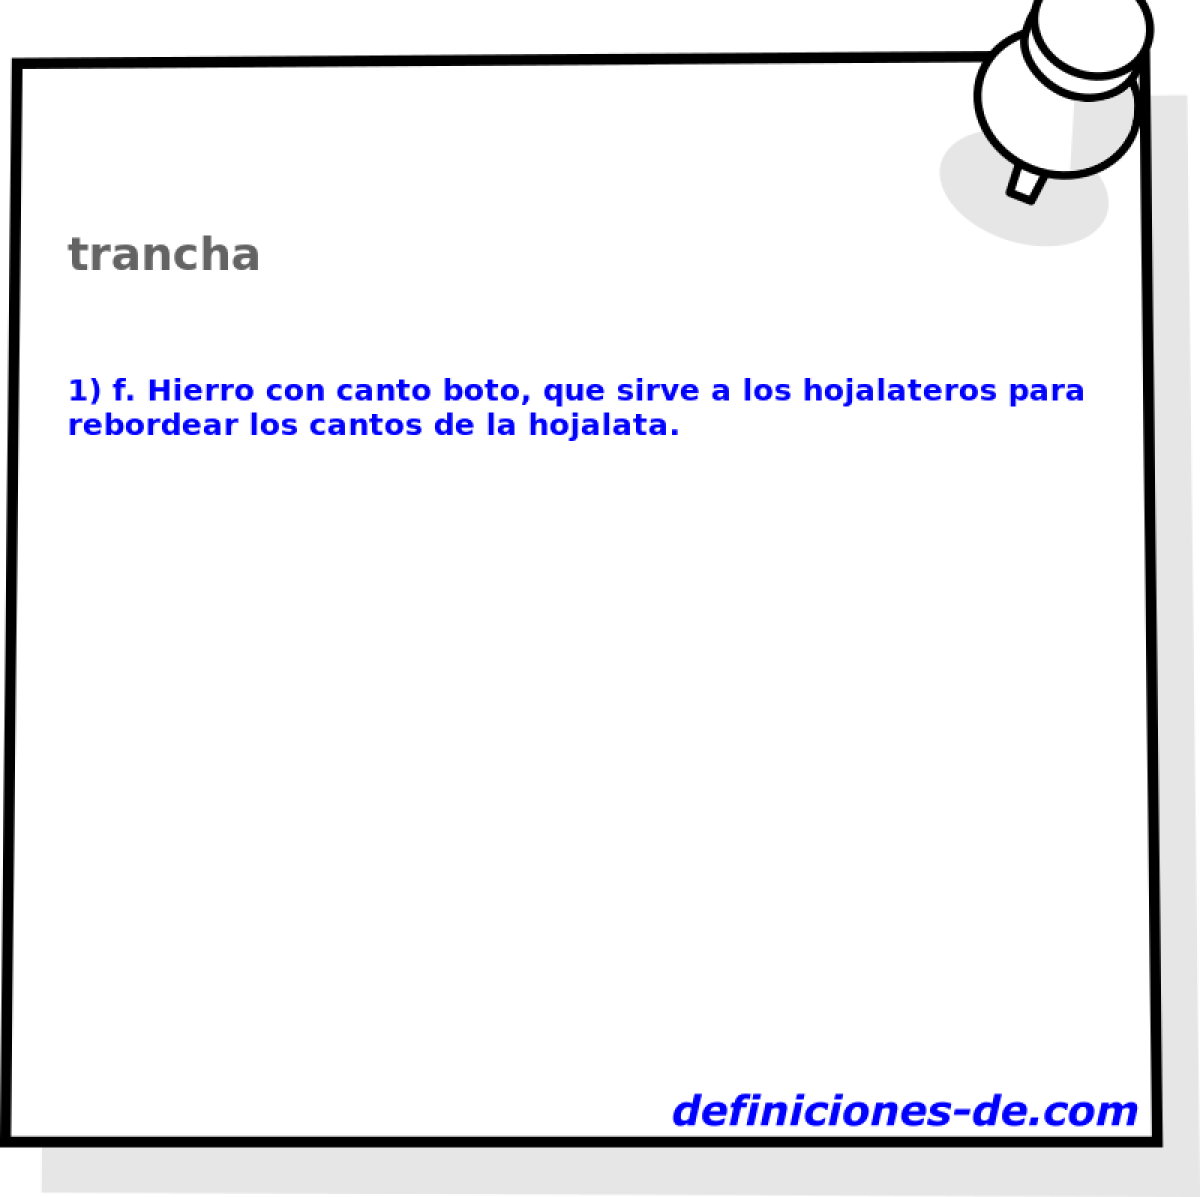 trancha 